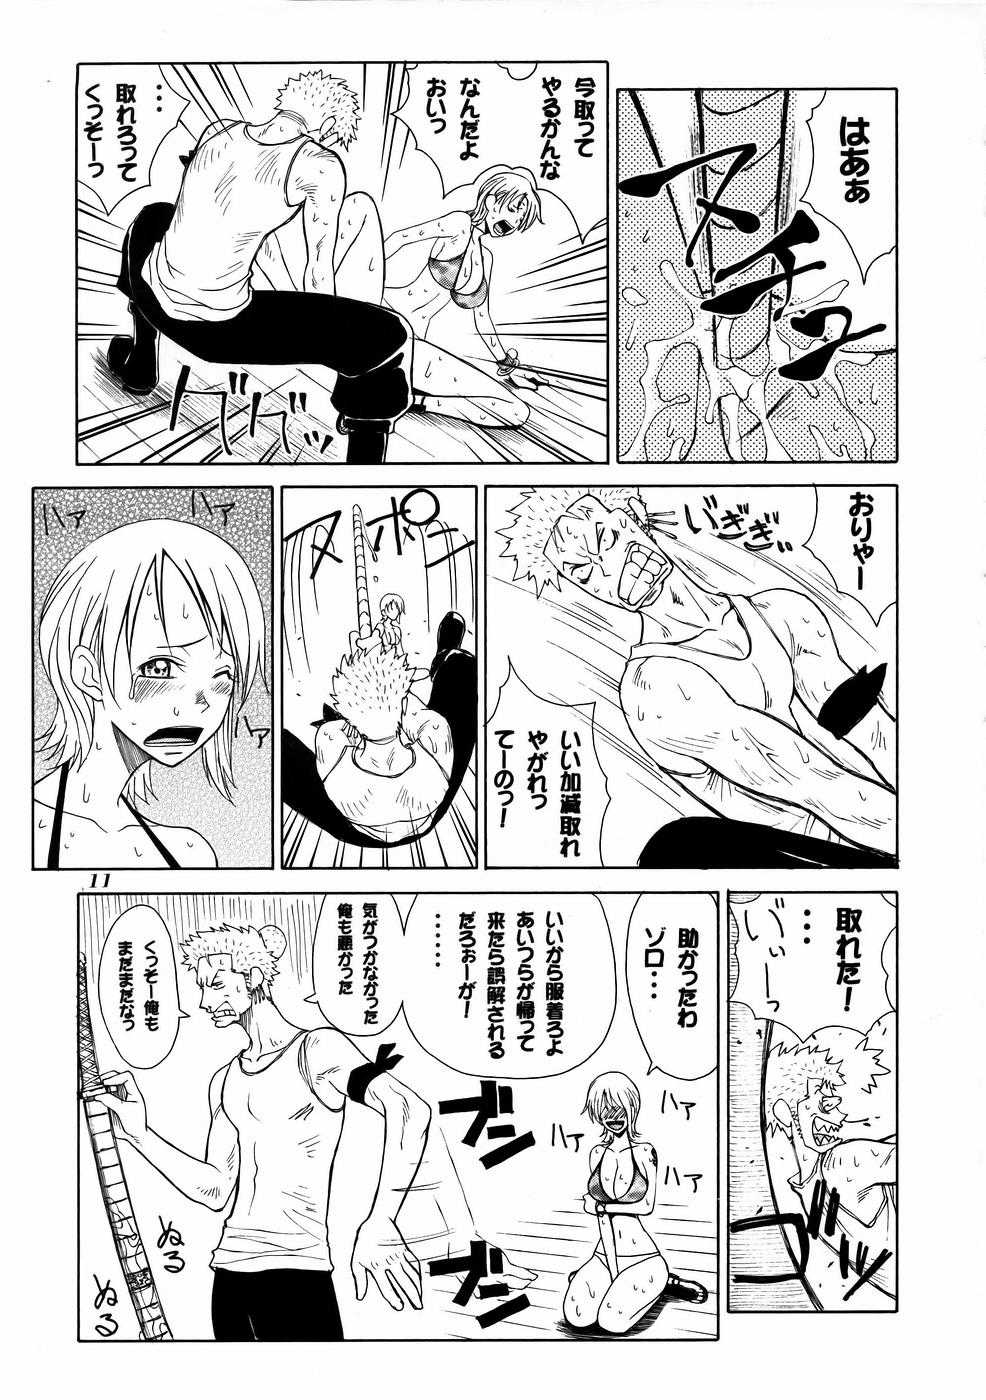 [あると屋] mikicy Vol.04 (One Piece) 